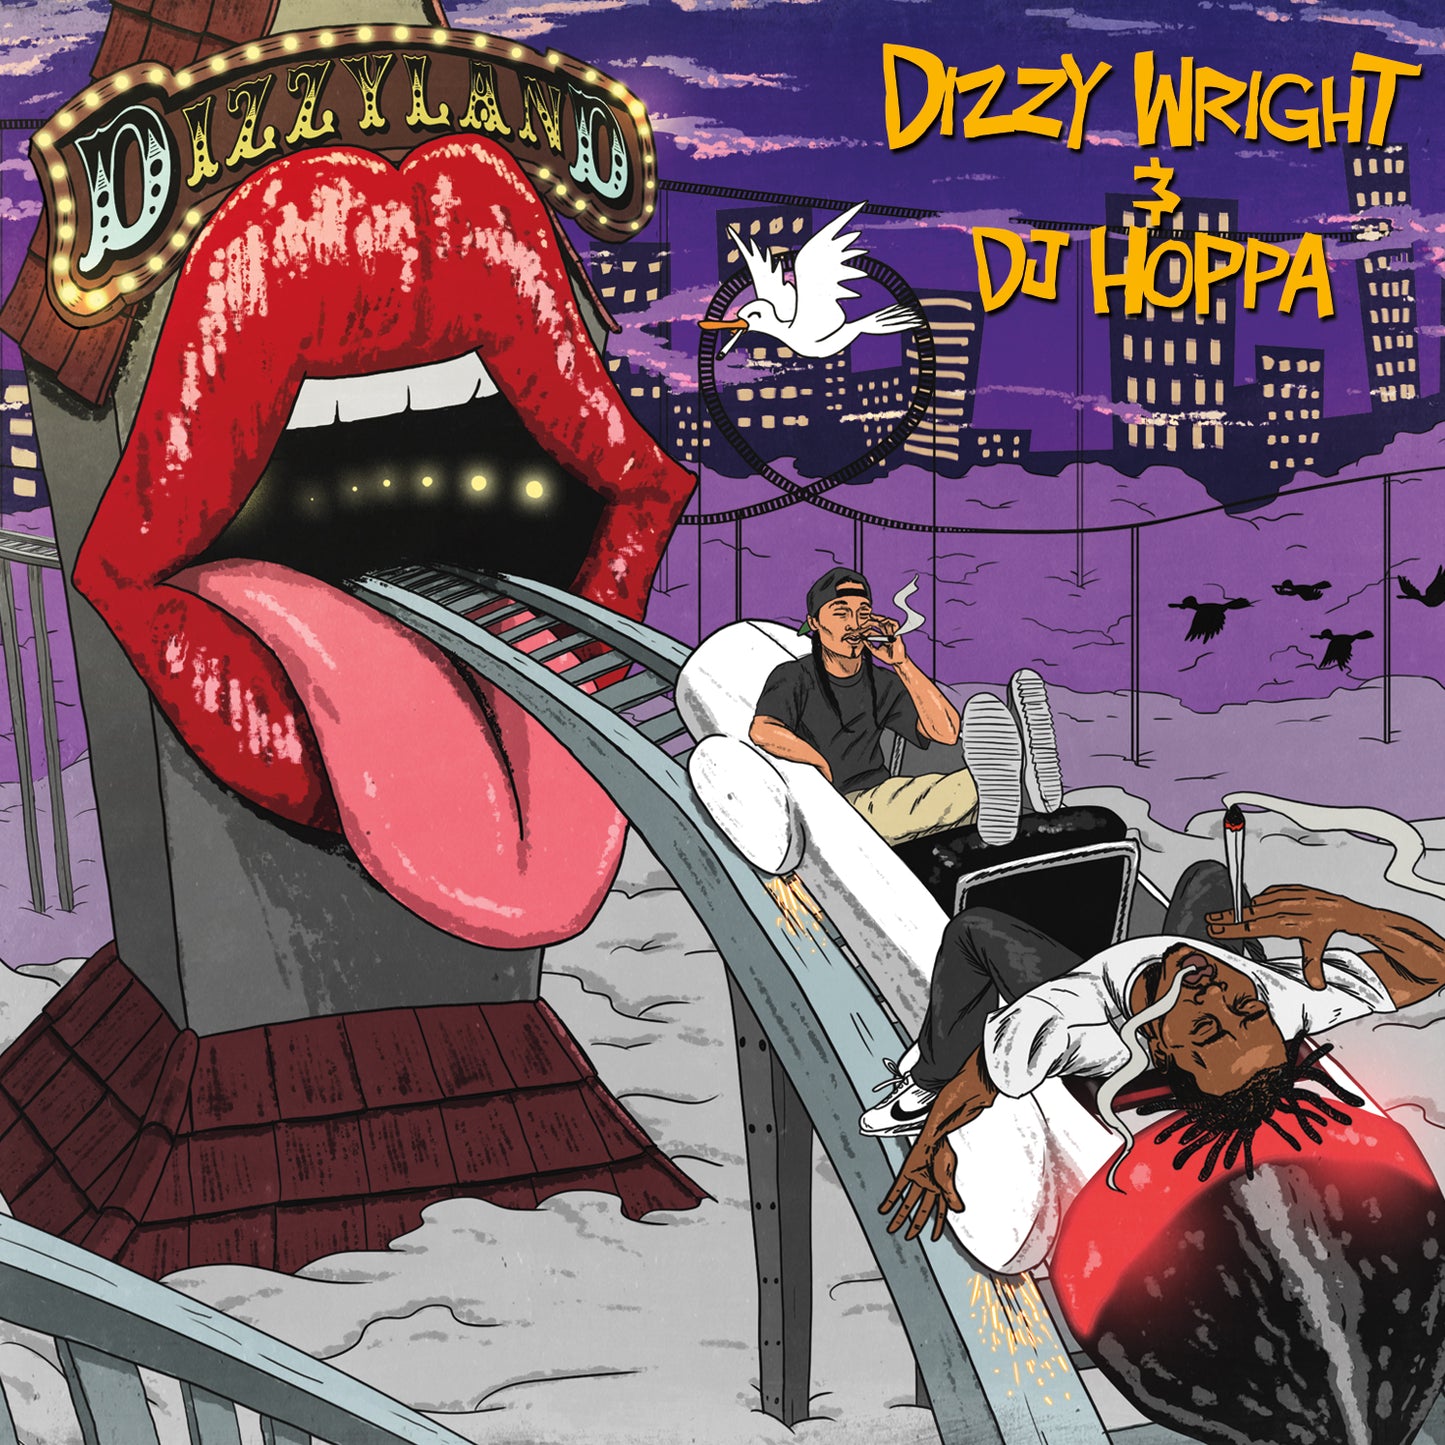 Dizzyland (CD)